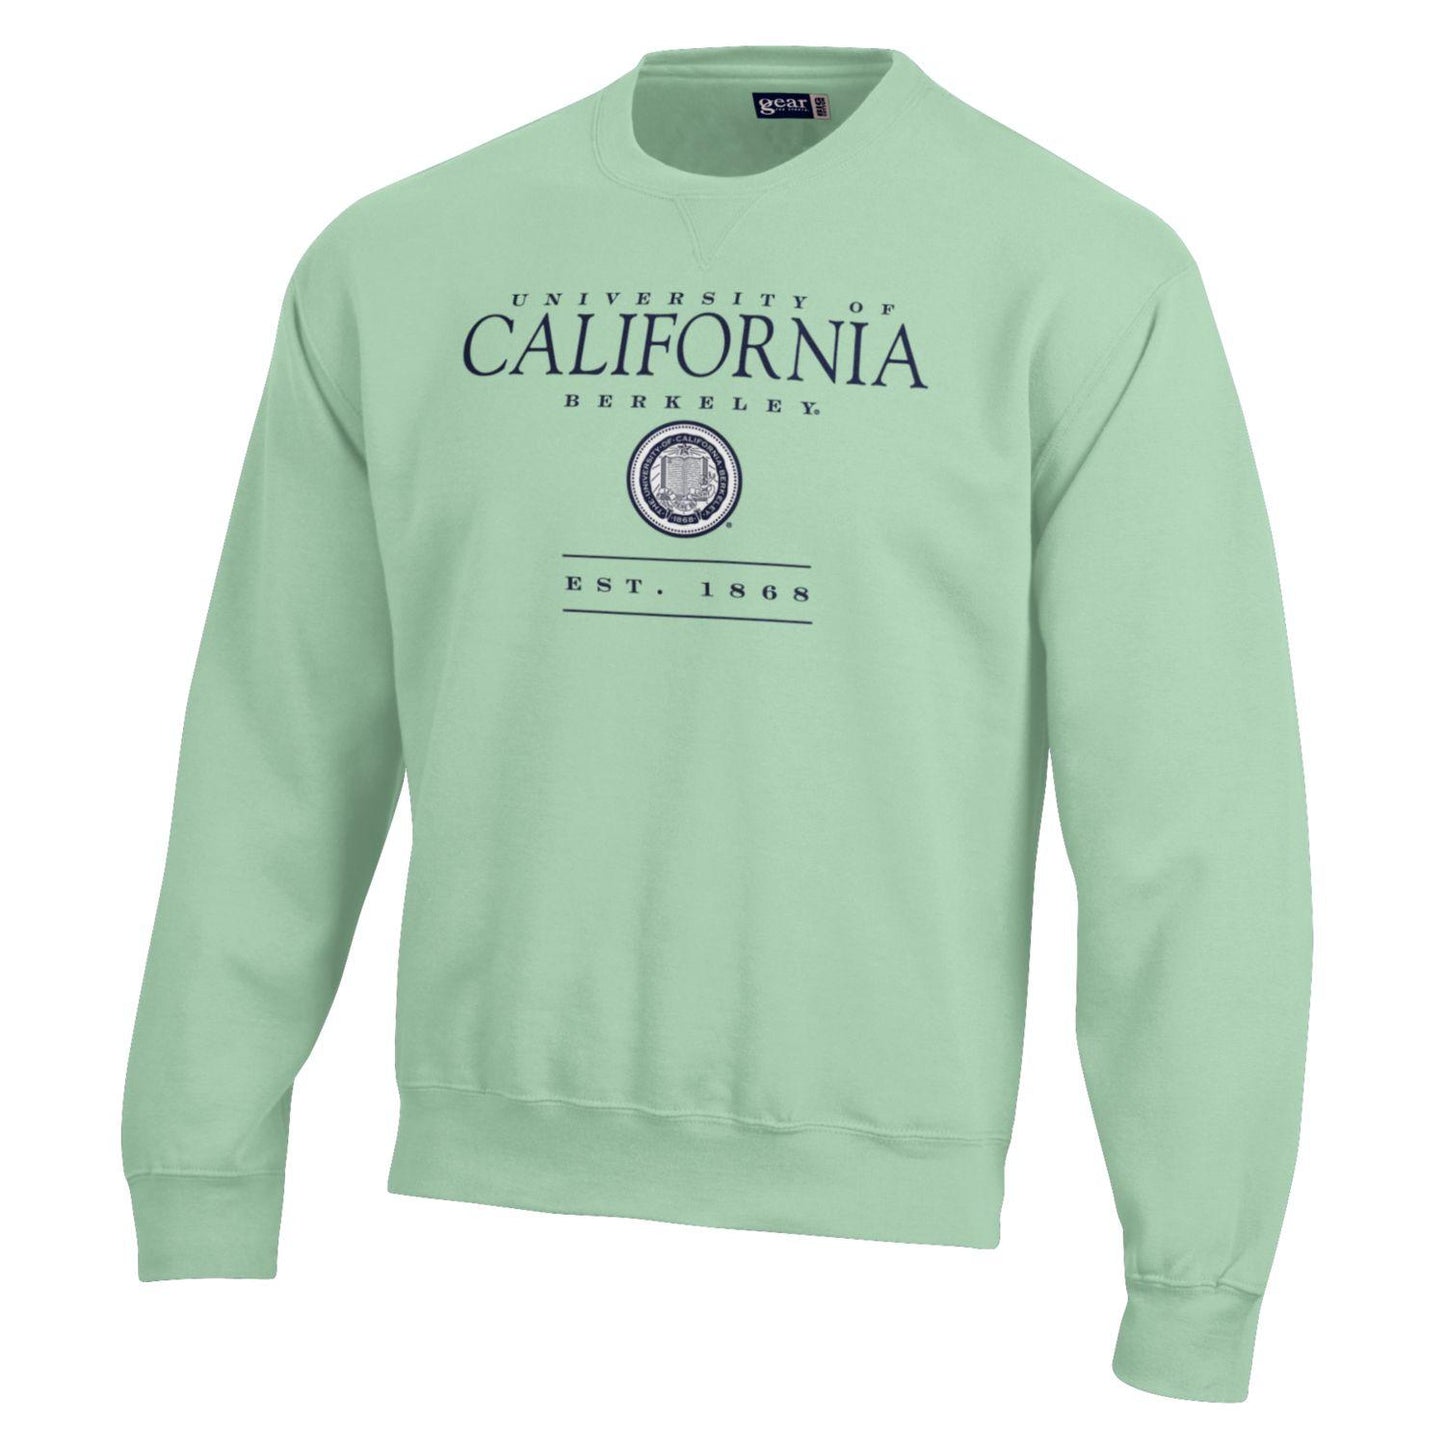 of University of California Berkeley over seal Big cotton crew neck sweatshirt- Mint-Shop College Wear